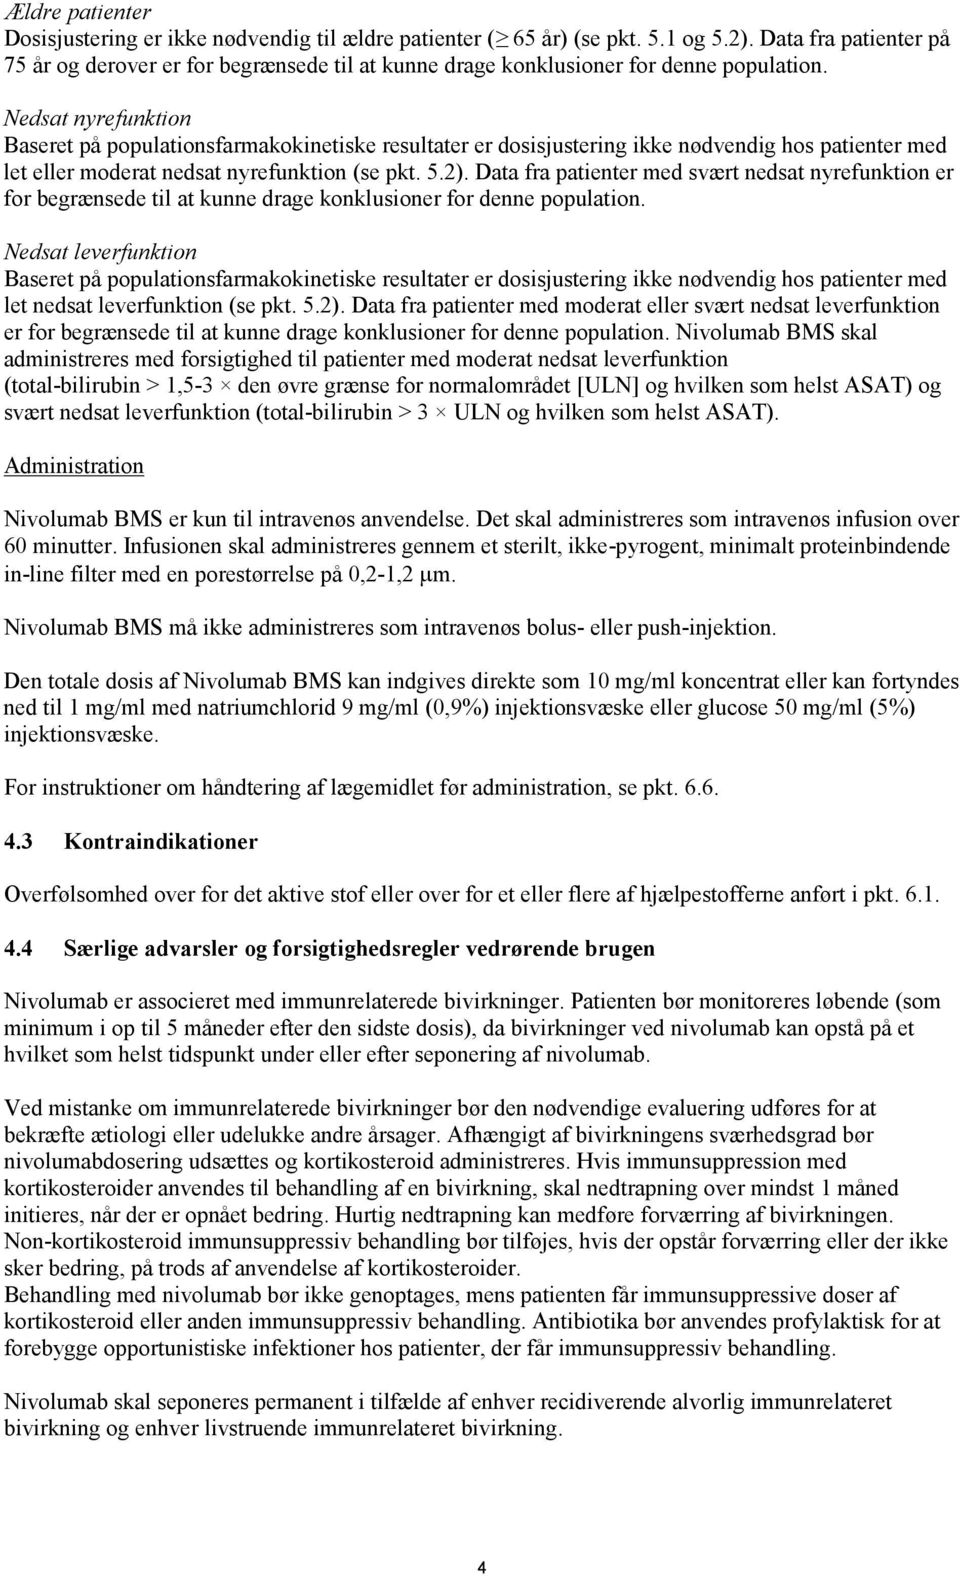 Nedsat nyrefunktion Baseret på populationsfarmakokinetiske resultater er dosisjustering ikke nødvendig hos patienter med let eller moderat nedsat nyrefunktion (se pkt. 5.2).